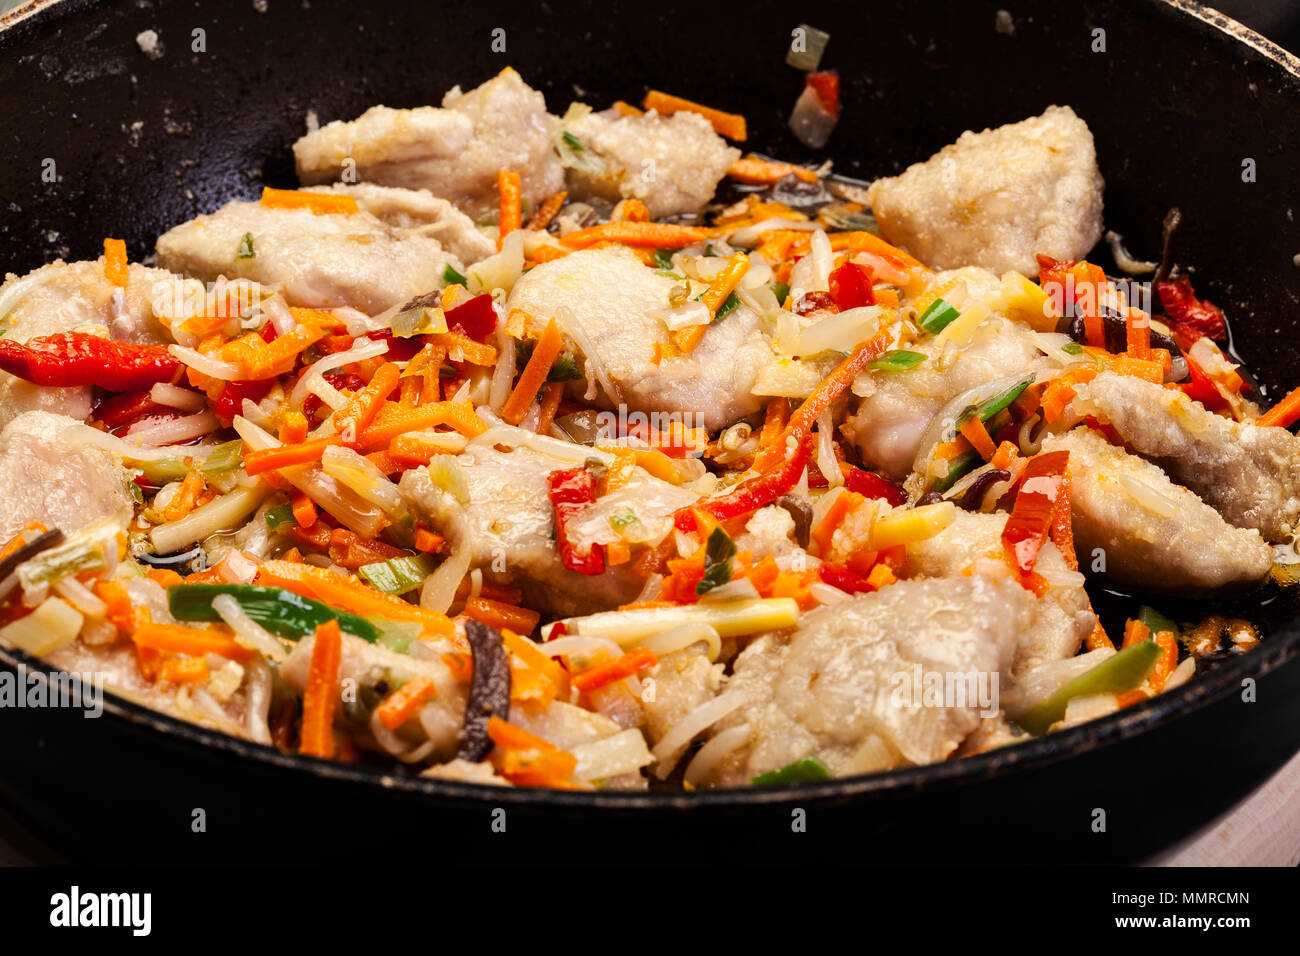 Des morceaux de porc avec un mélange de légumes chinois dans un wok casserole Banque D'Images